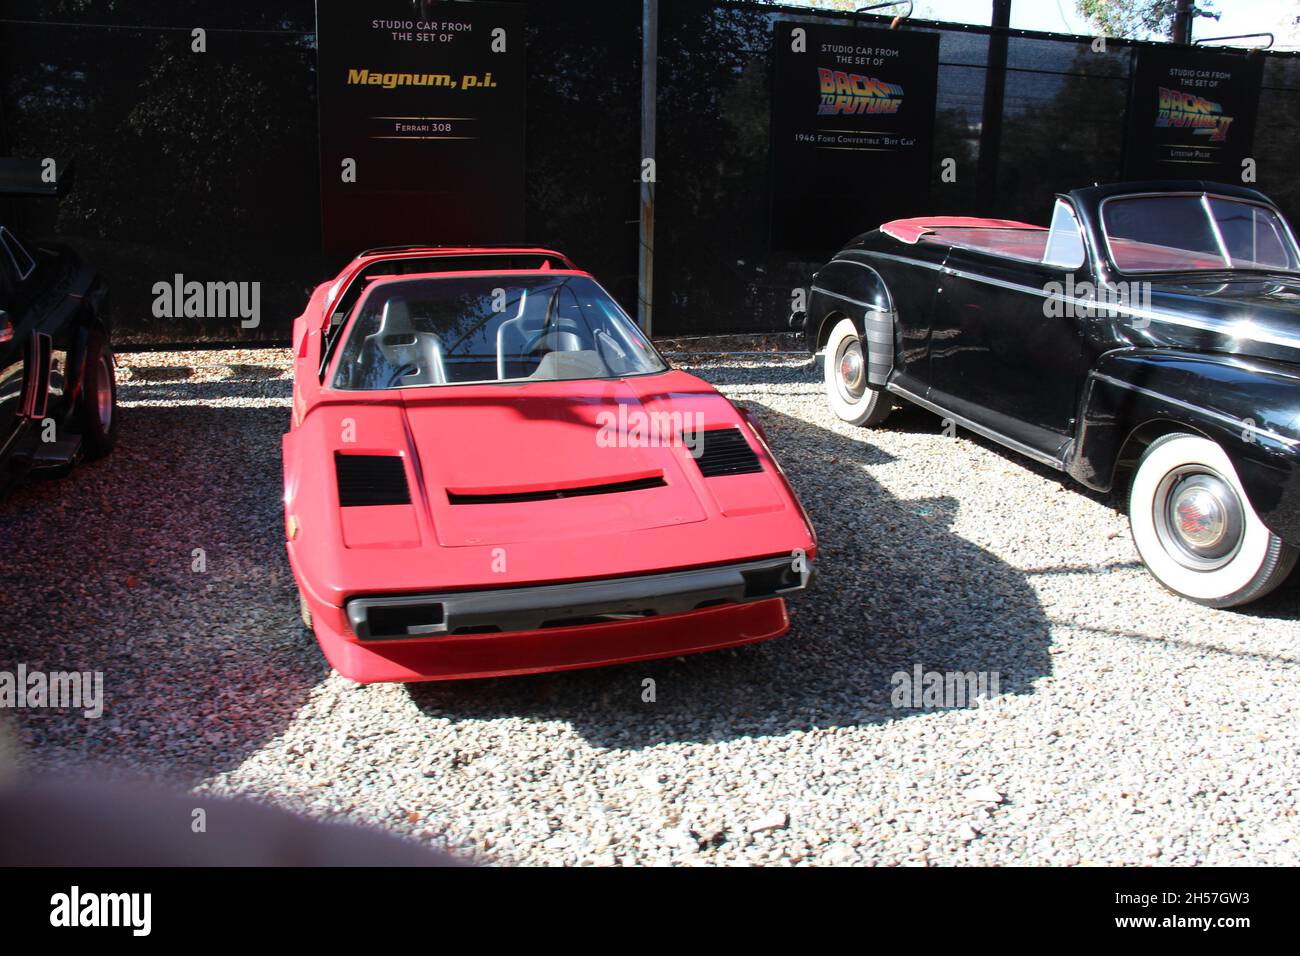 Ferrari 308 : série TV Magnum, Pi.Exposé à Universal Studios Hollywood à Los Angeles - Californie - États-Unis. Banque D'Images